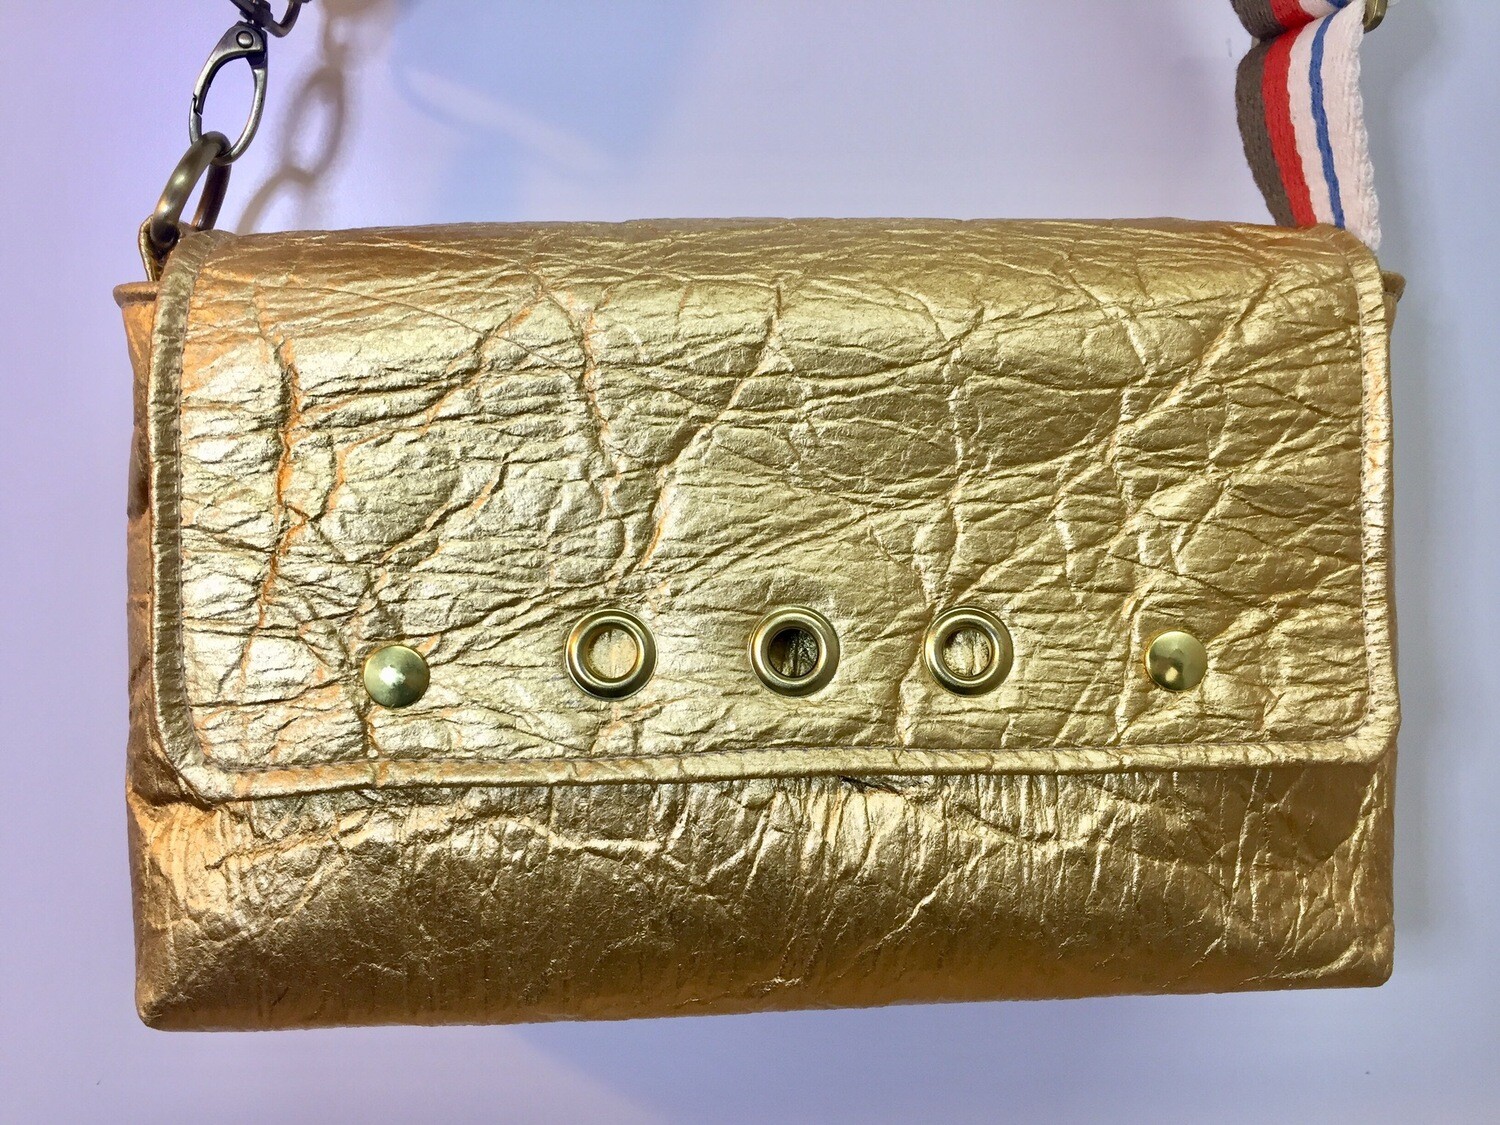 Silver Gold sac en pinatex sac vegan , sangle réglable orangé taupe beige ...fait à Toulouse France